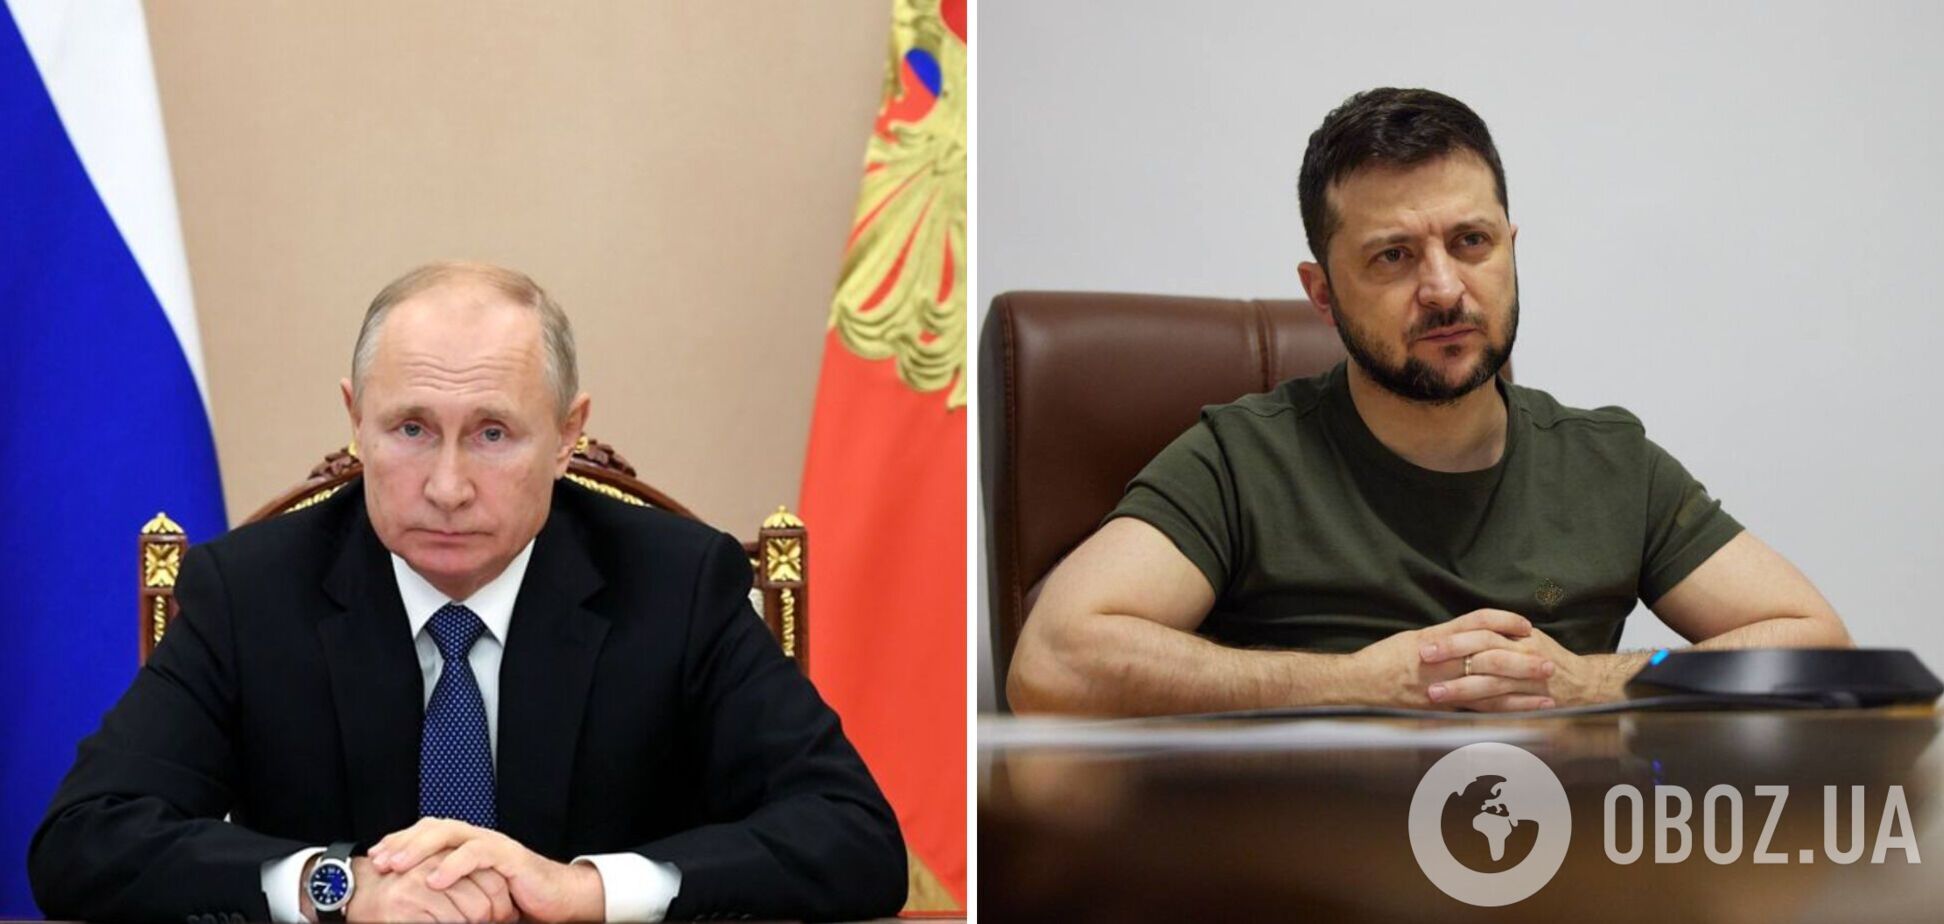 Пєсков назвав умову зустрічі Путіна і Зеленського та заявив, що переговори поки неможливі